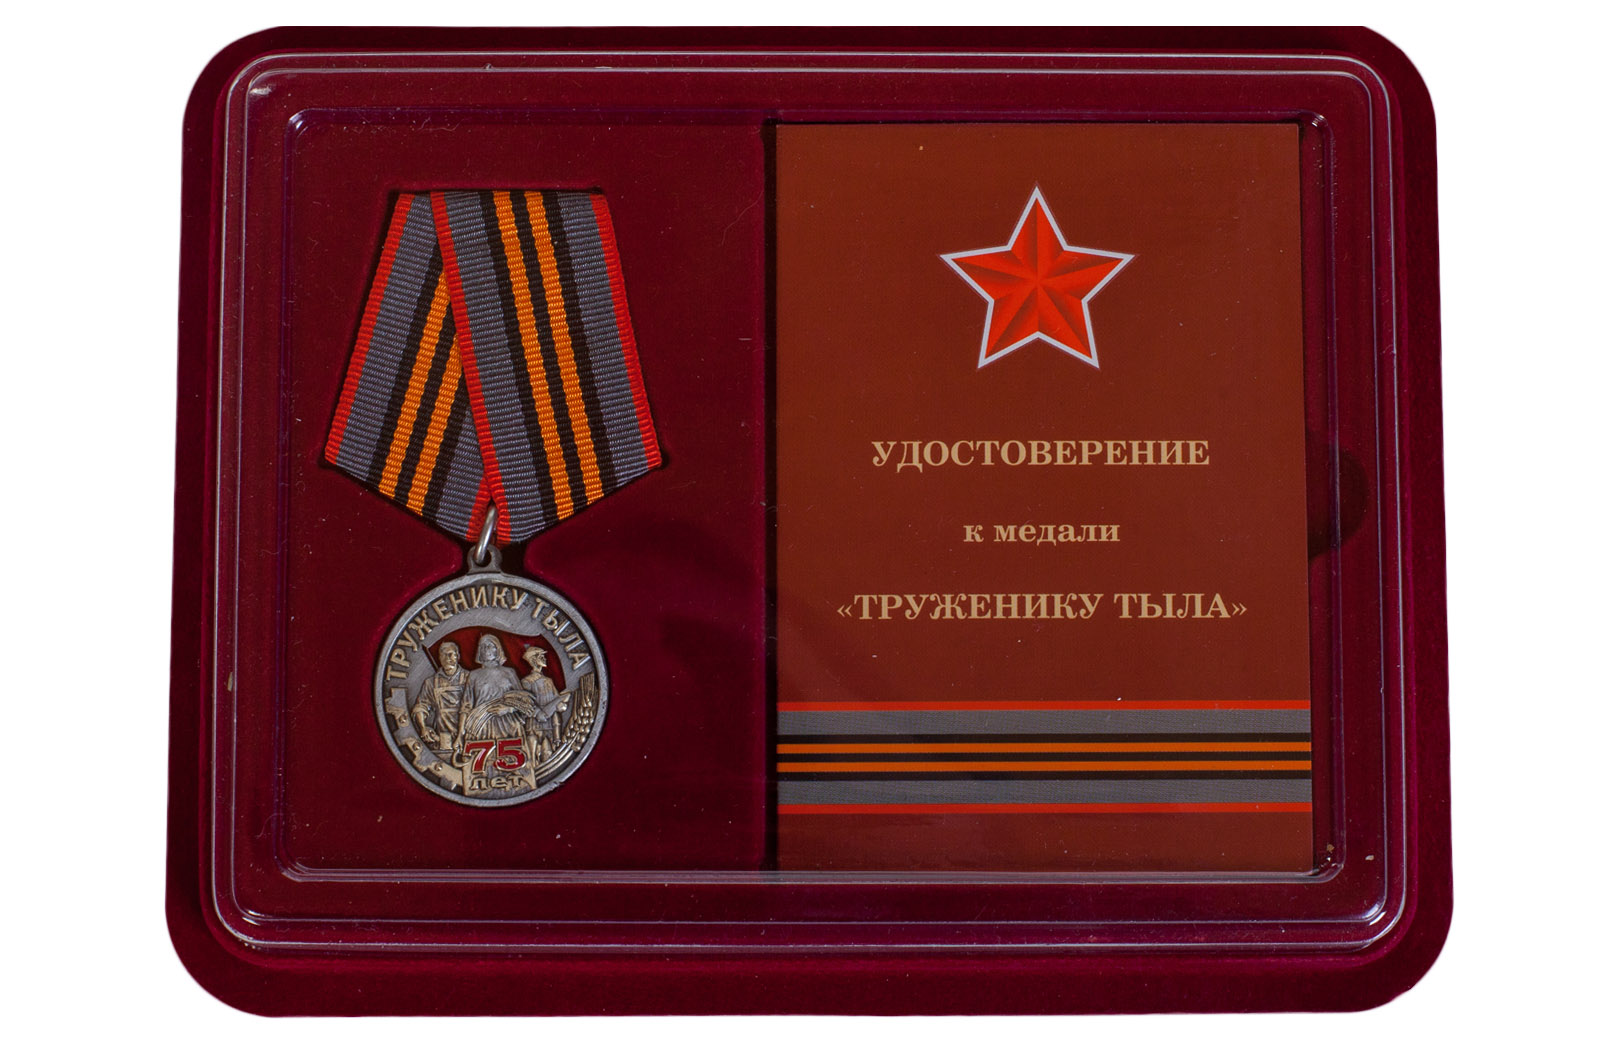 Купить общественную медаль к 75-летию Победы в ВОВ Труженику тыла в подарок